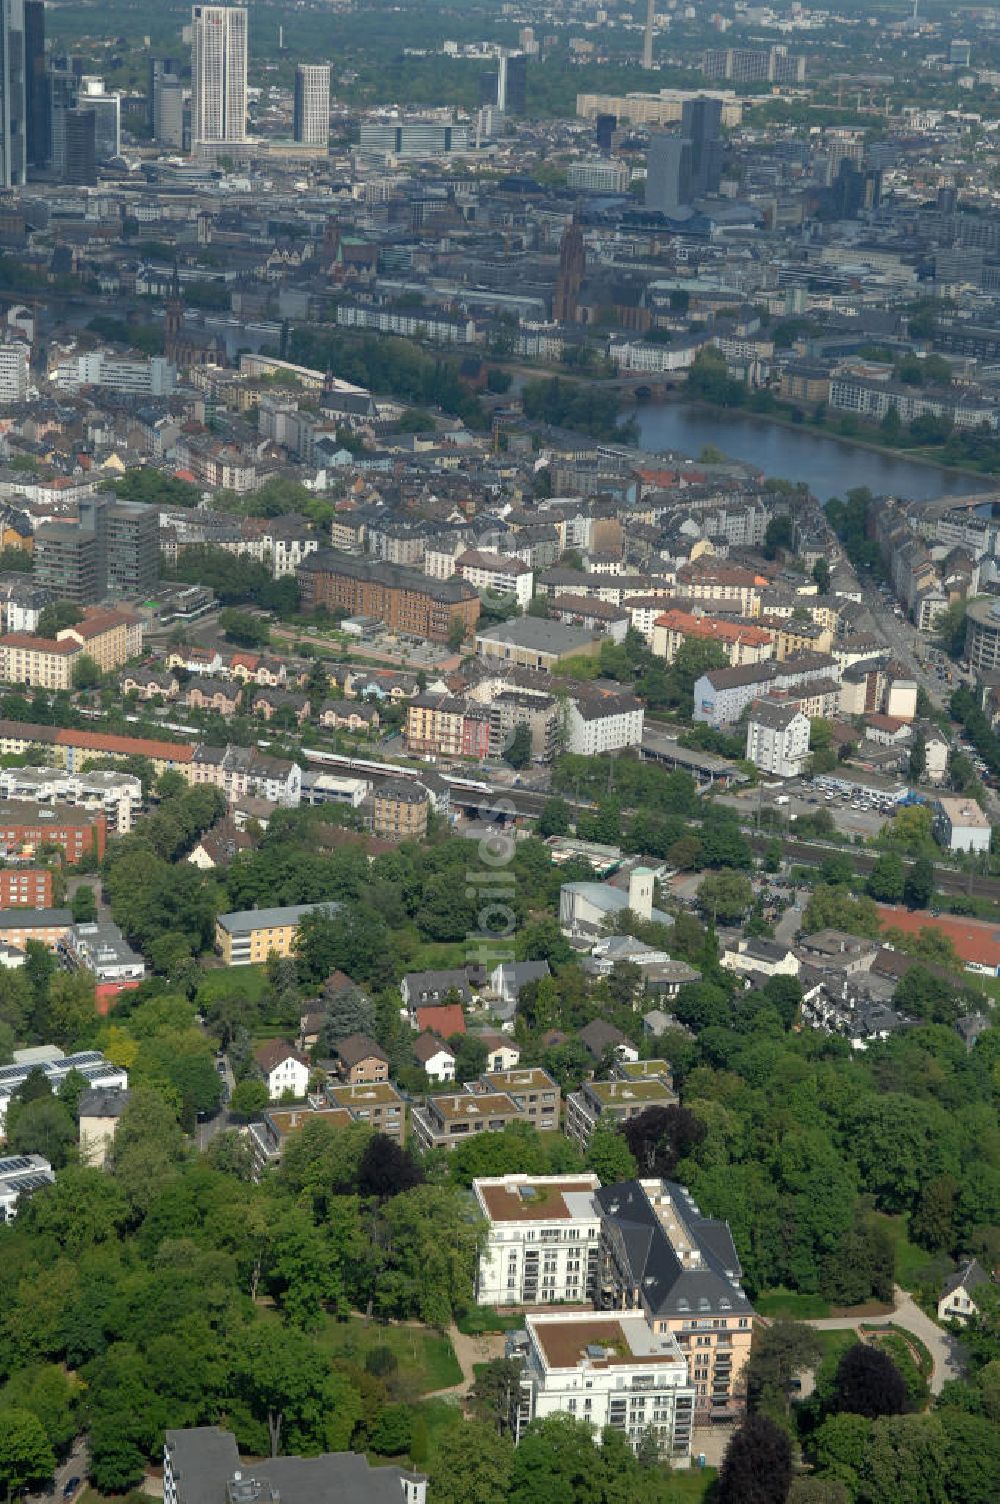 Frankfurt am Main von oben - Blick auf die SchlossResidence Mühlberg im Frankfurter Stadtteil Sachsenhausen